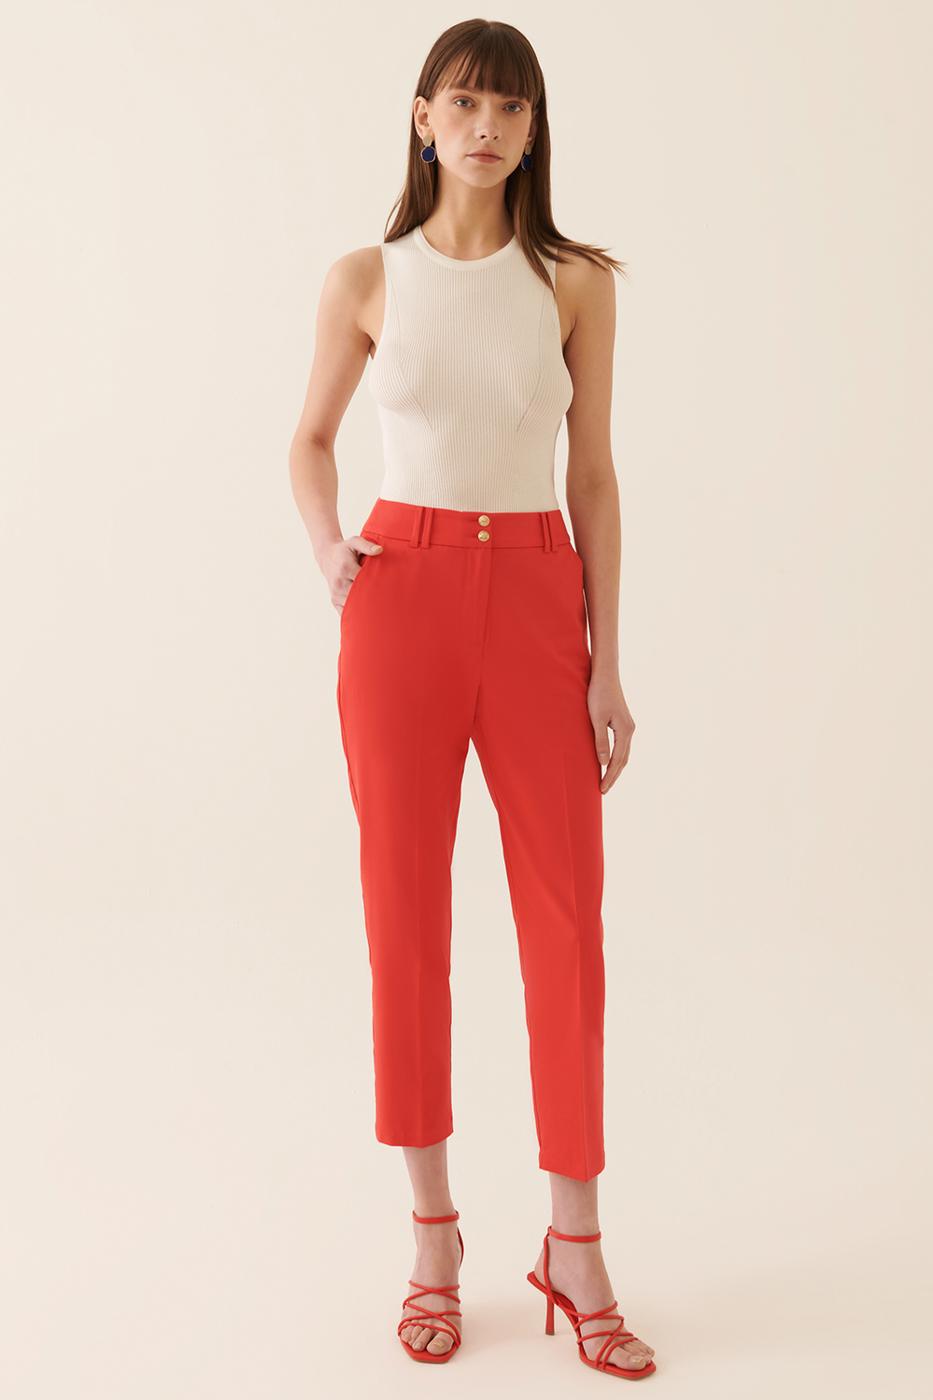 Elinsa Regular Fit Bilek Boy Orta Bel Kırmızı Renk Kadın Pantolon